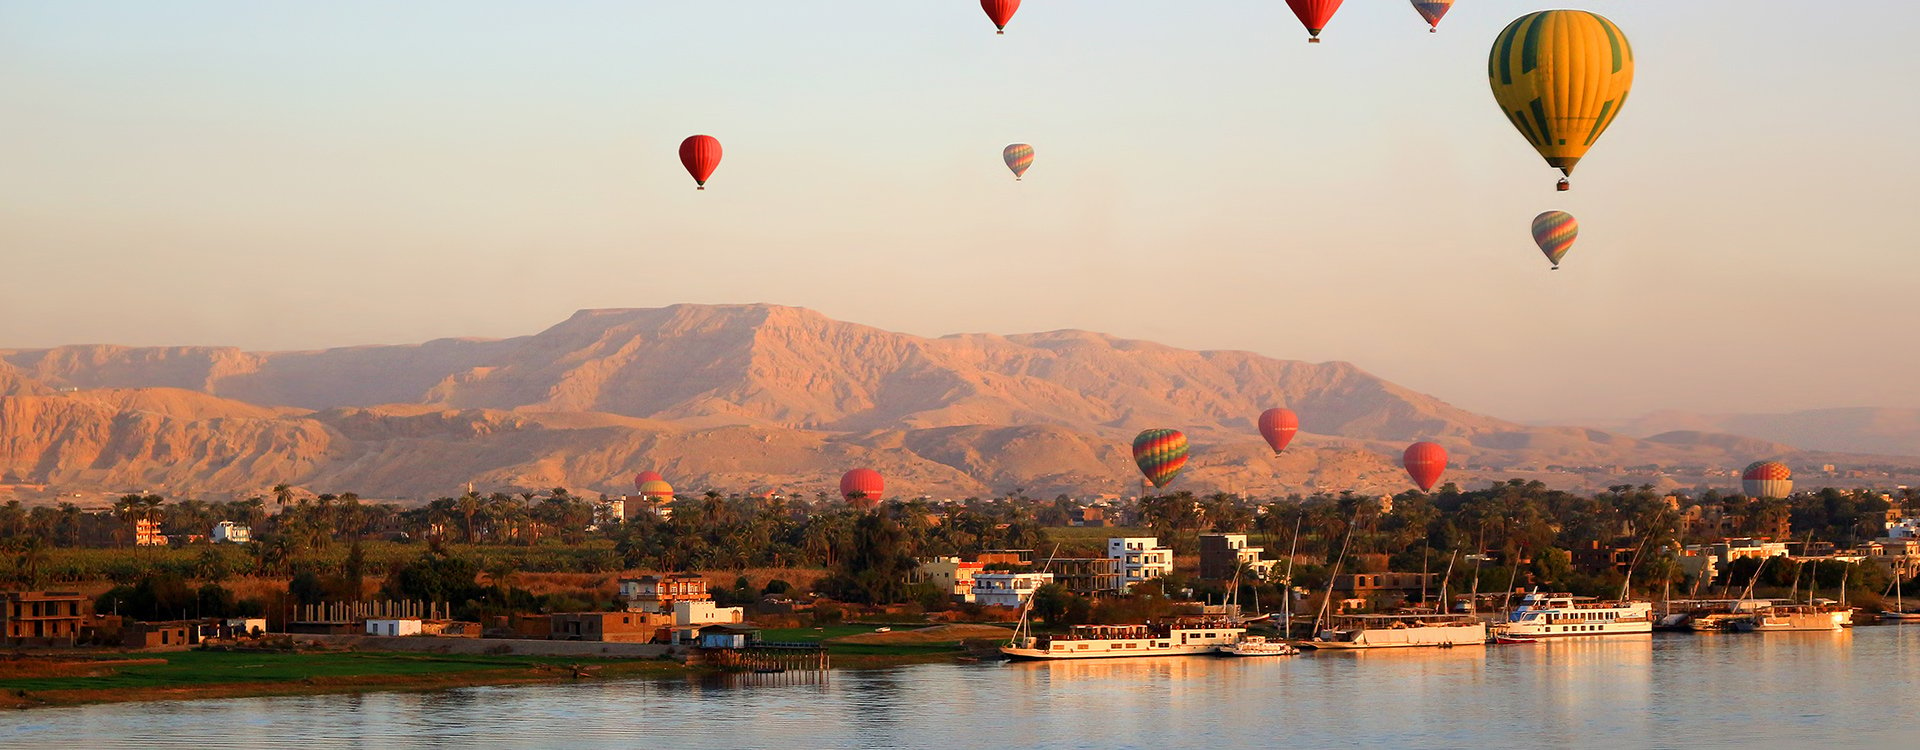 Luxor_Hot Air Balooning